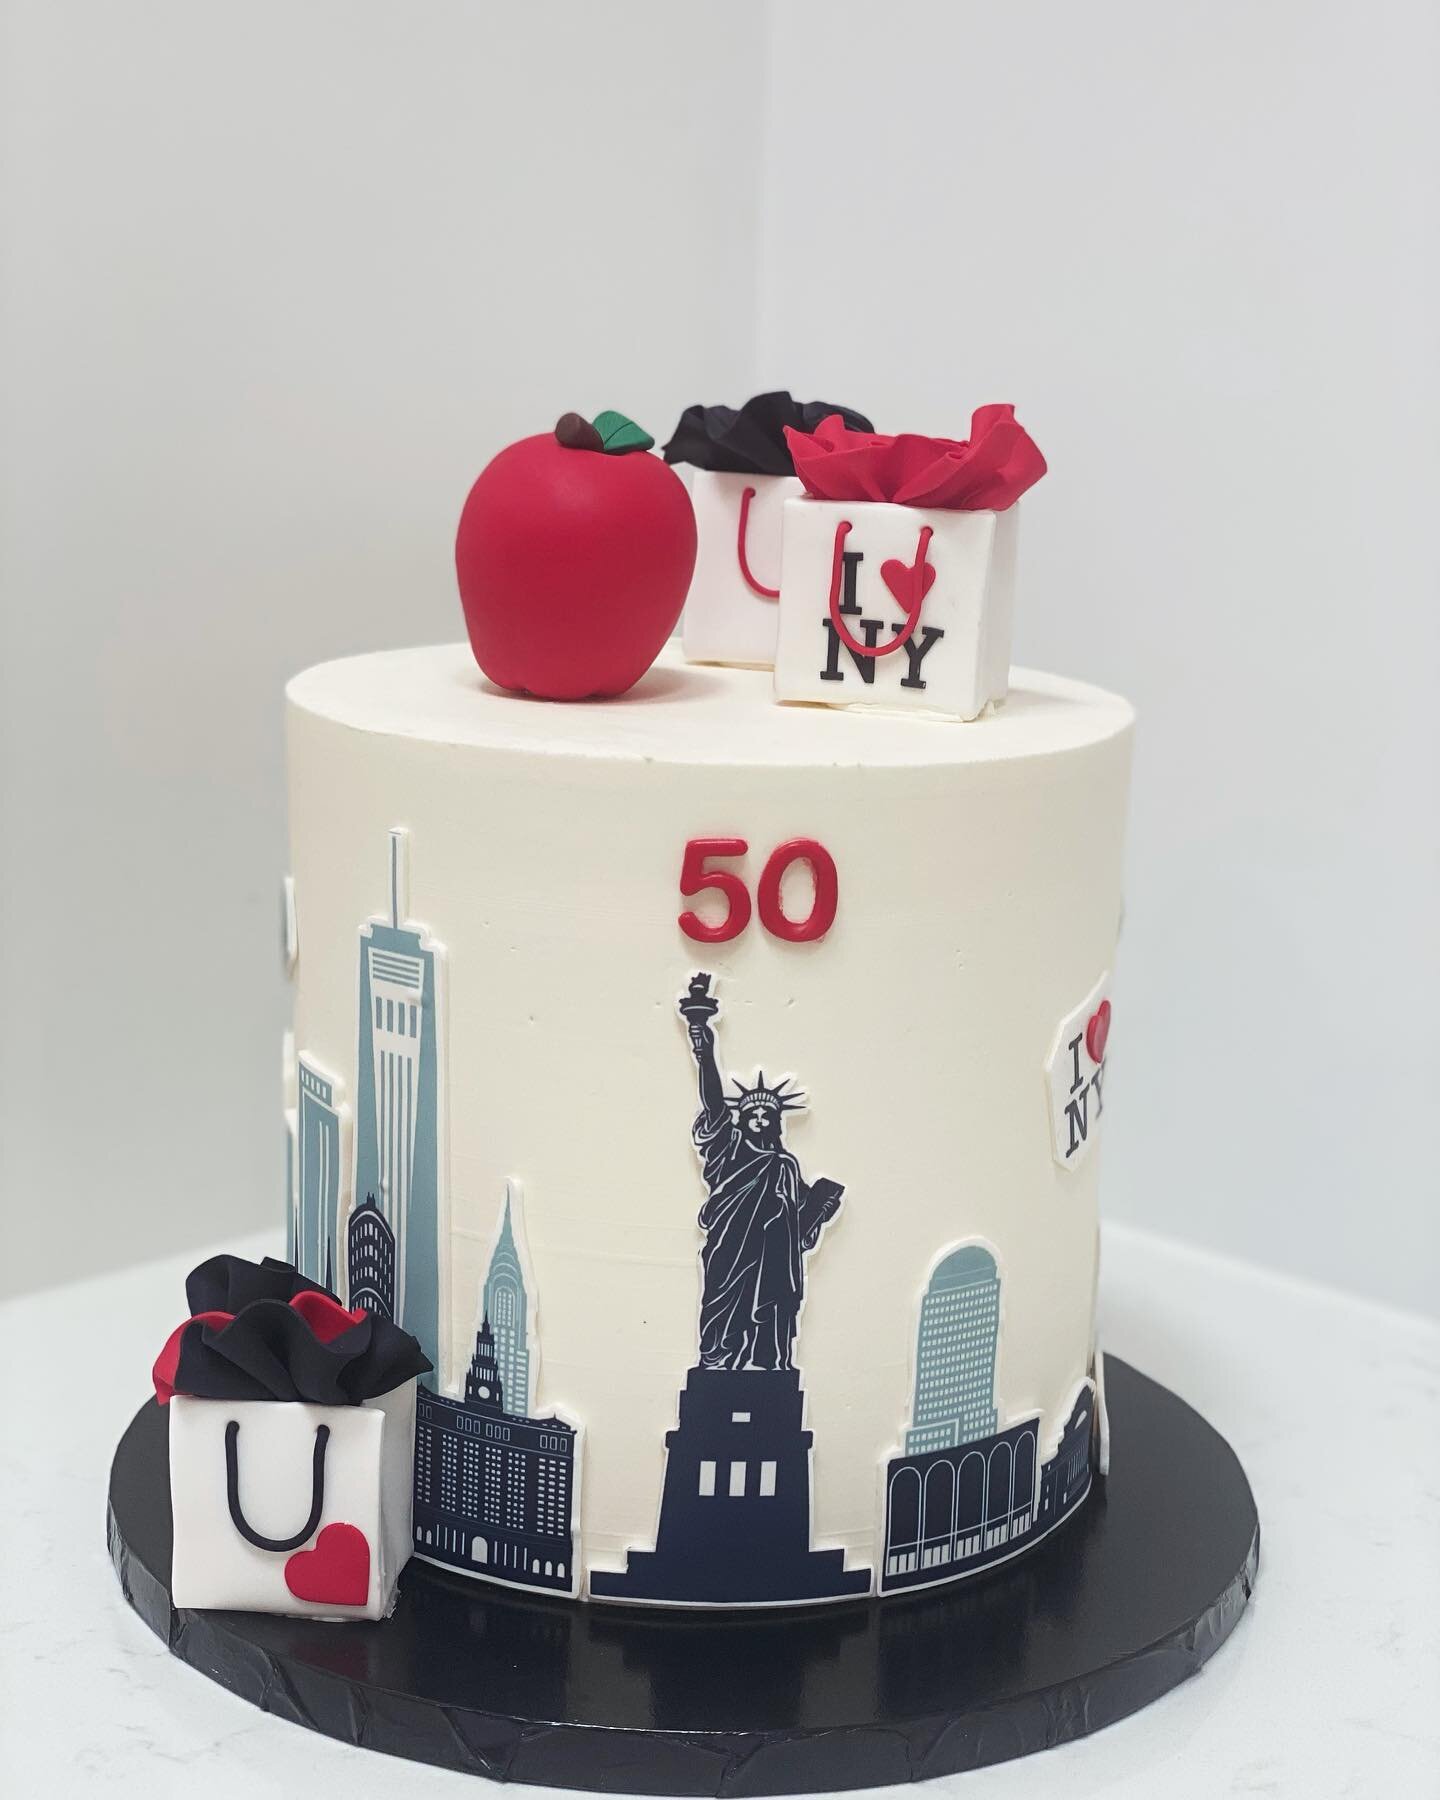 Celebrating New York style &hellip;.
#cakescakescakes #birthdaydecor #cakesoﬁnstagram #letscelebrate #cakesofmelbourne #edibleimagecake #chocolatemudcake #bakedfresh #letseatcake #cakesmadewithlove